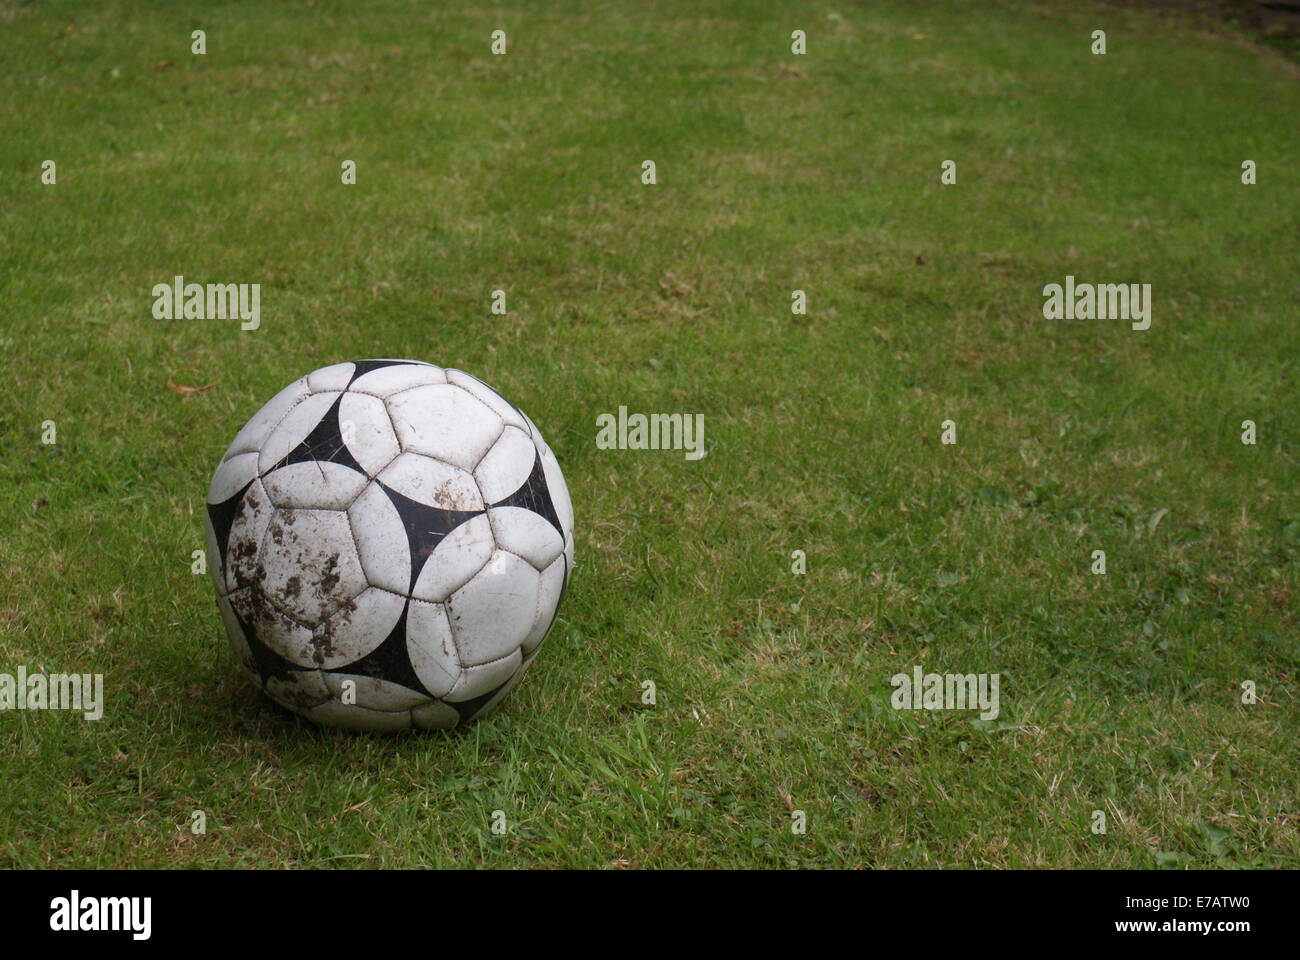 Fußball auf dem Rasen Stockfoto